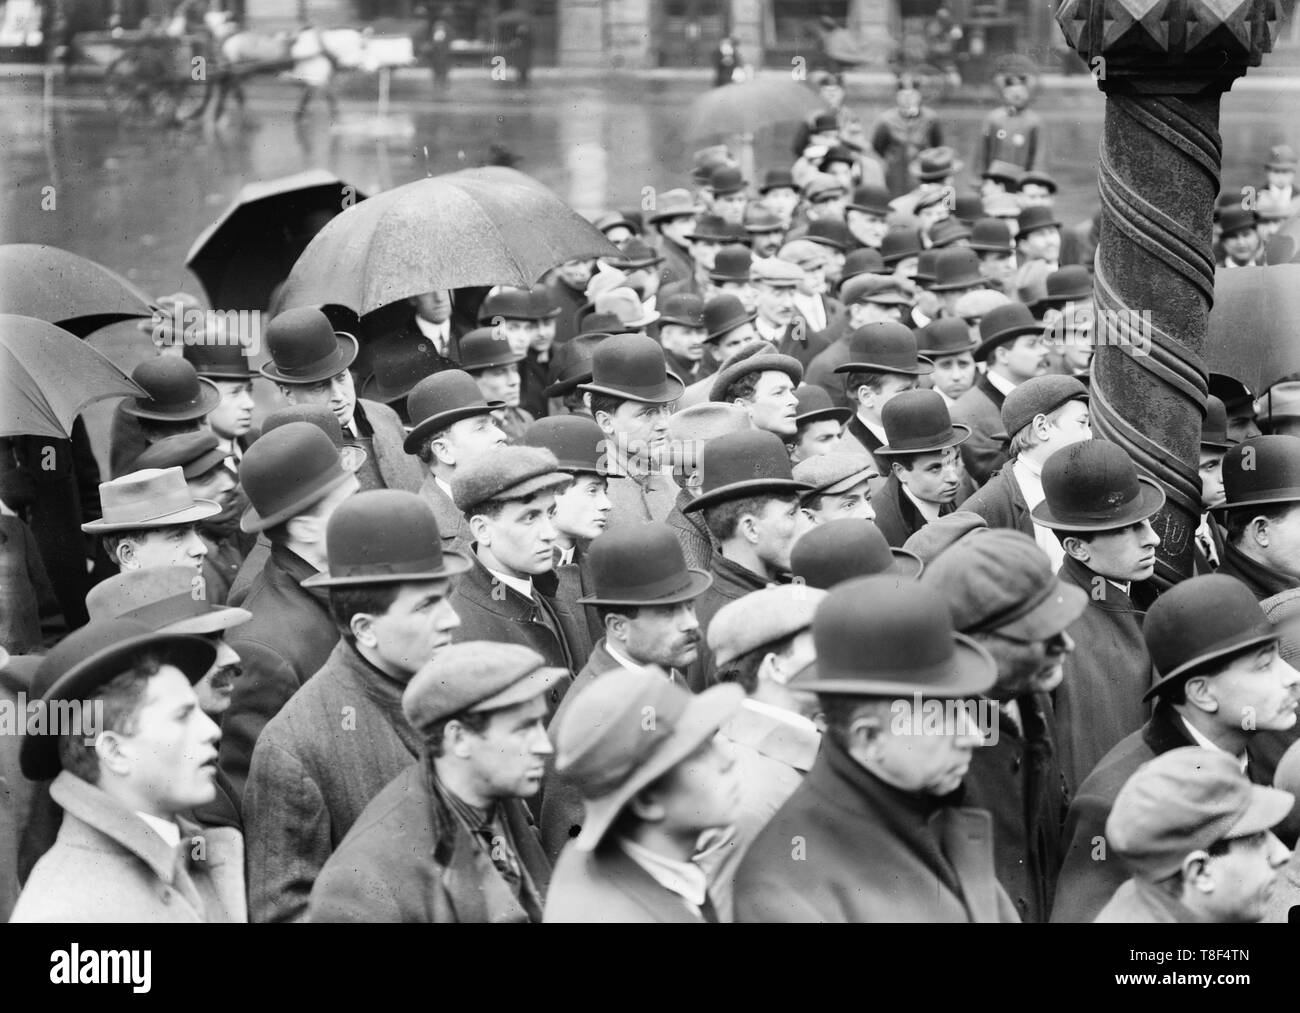 Lawrence, New York réunion grève - Photo, groupe d'hommes réunis à l'extérieur, probablement dans la ville de New York, d'entendre parler de la grève du textile de Lawrence, Massachusetts, 1912 Banque D'Images